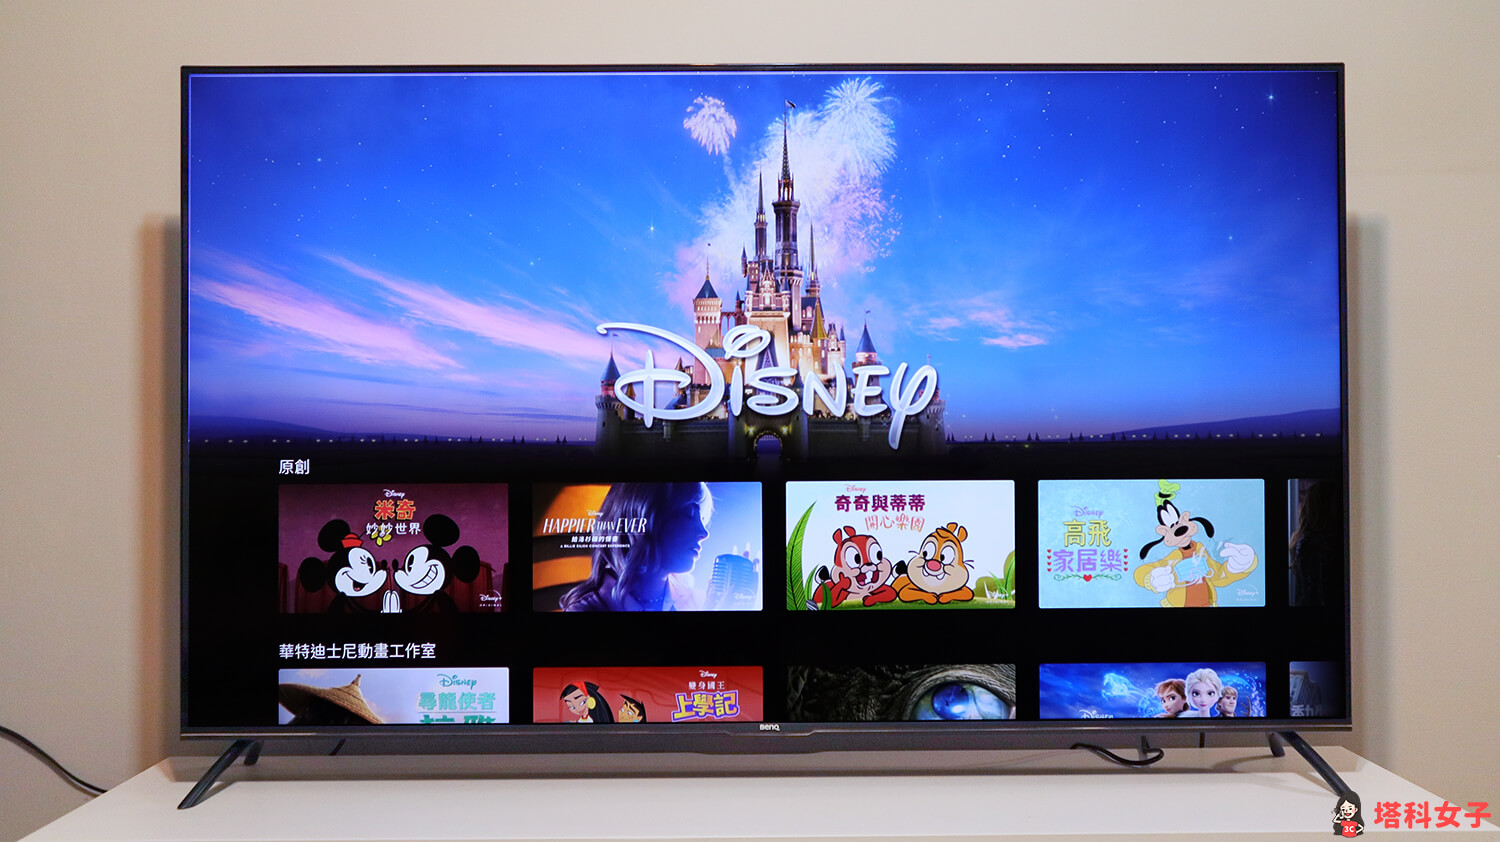 BenQ 4K HDR 智慧電視 E65-730 開箱：大螢幕看 Disney+